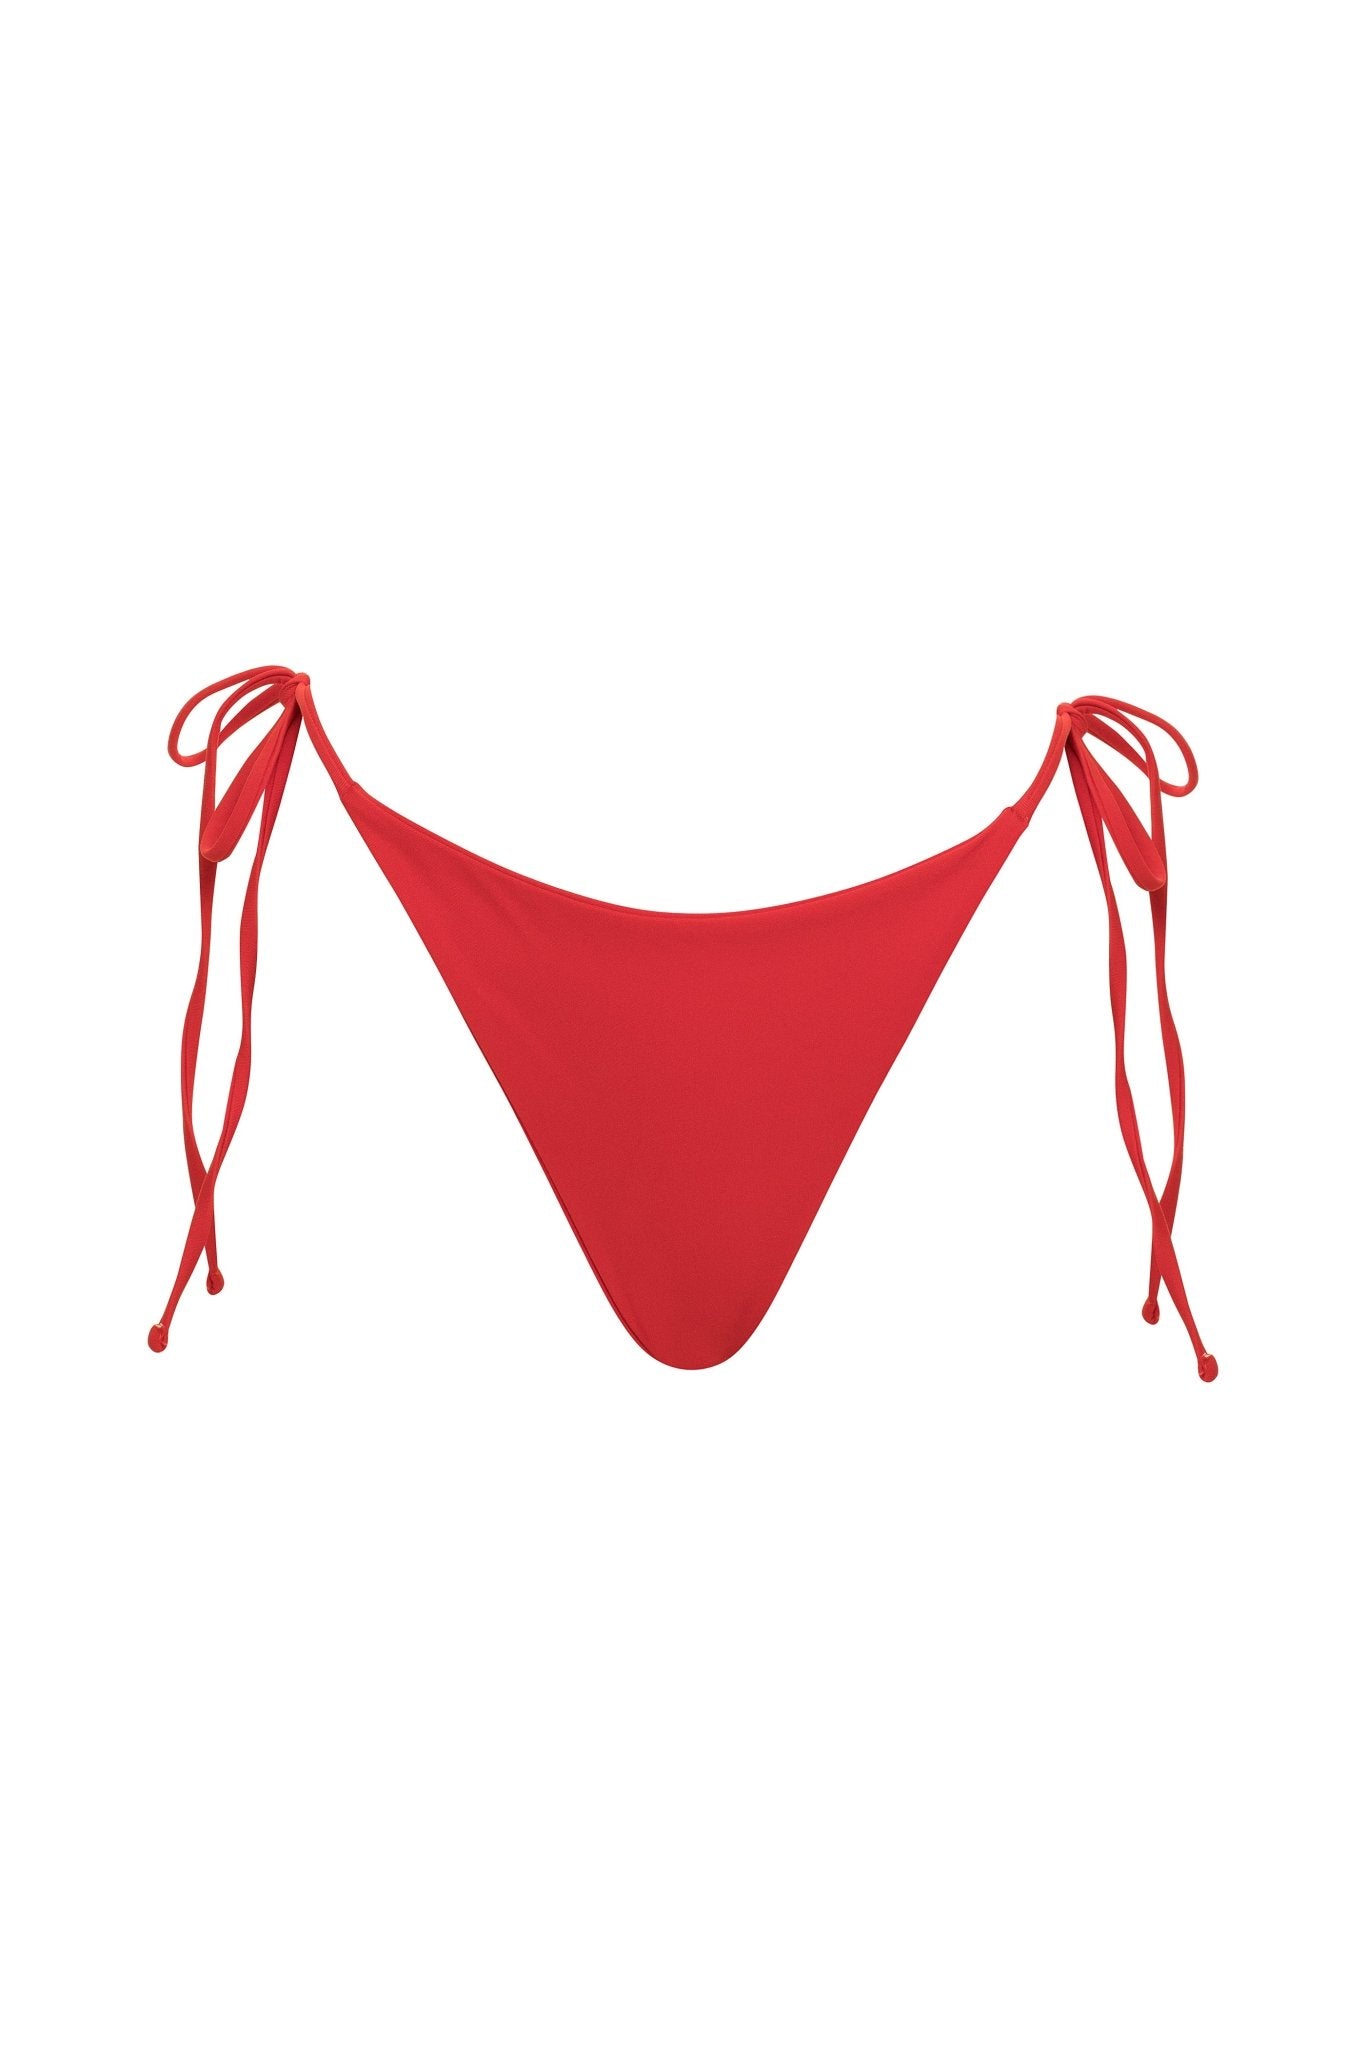 Gia | Red Bikini Set - YG COLLECTION